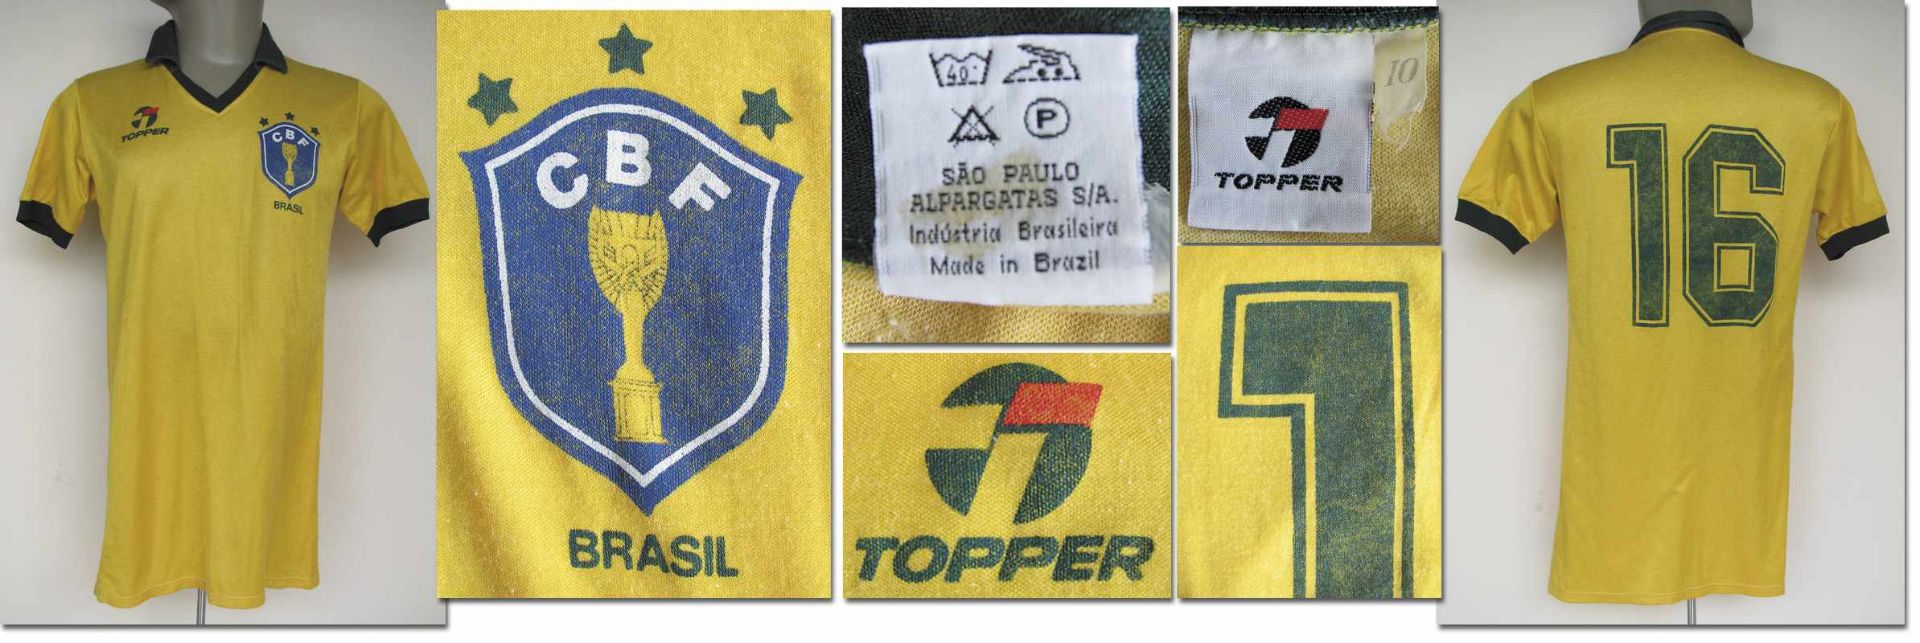 World Cup 1986 match worn football shirt Brazil - Original match worn shirt Brazil with number 16.